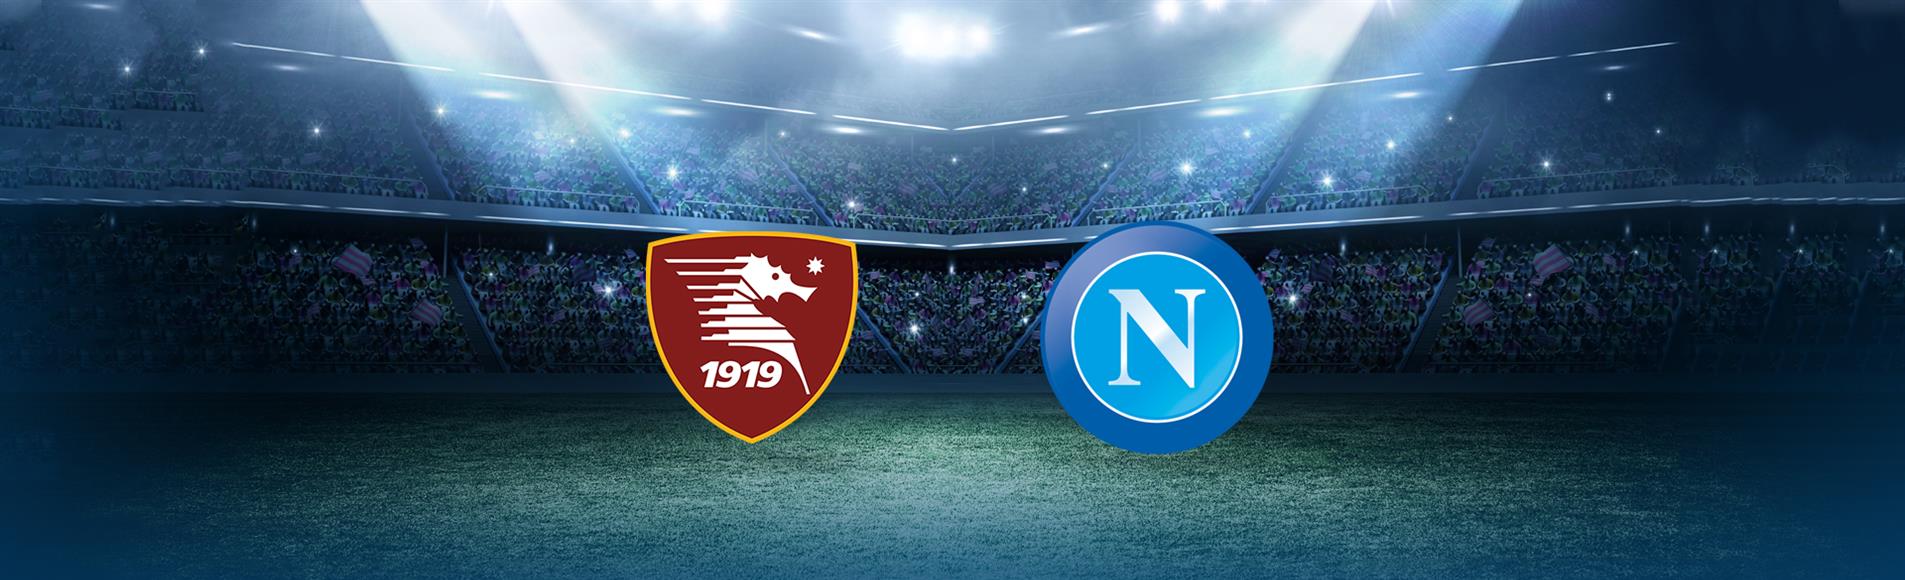 19 Giornata - Salernitana - Napoli 0 a 2